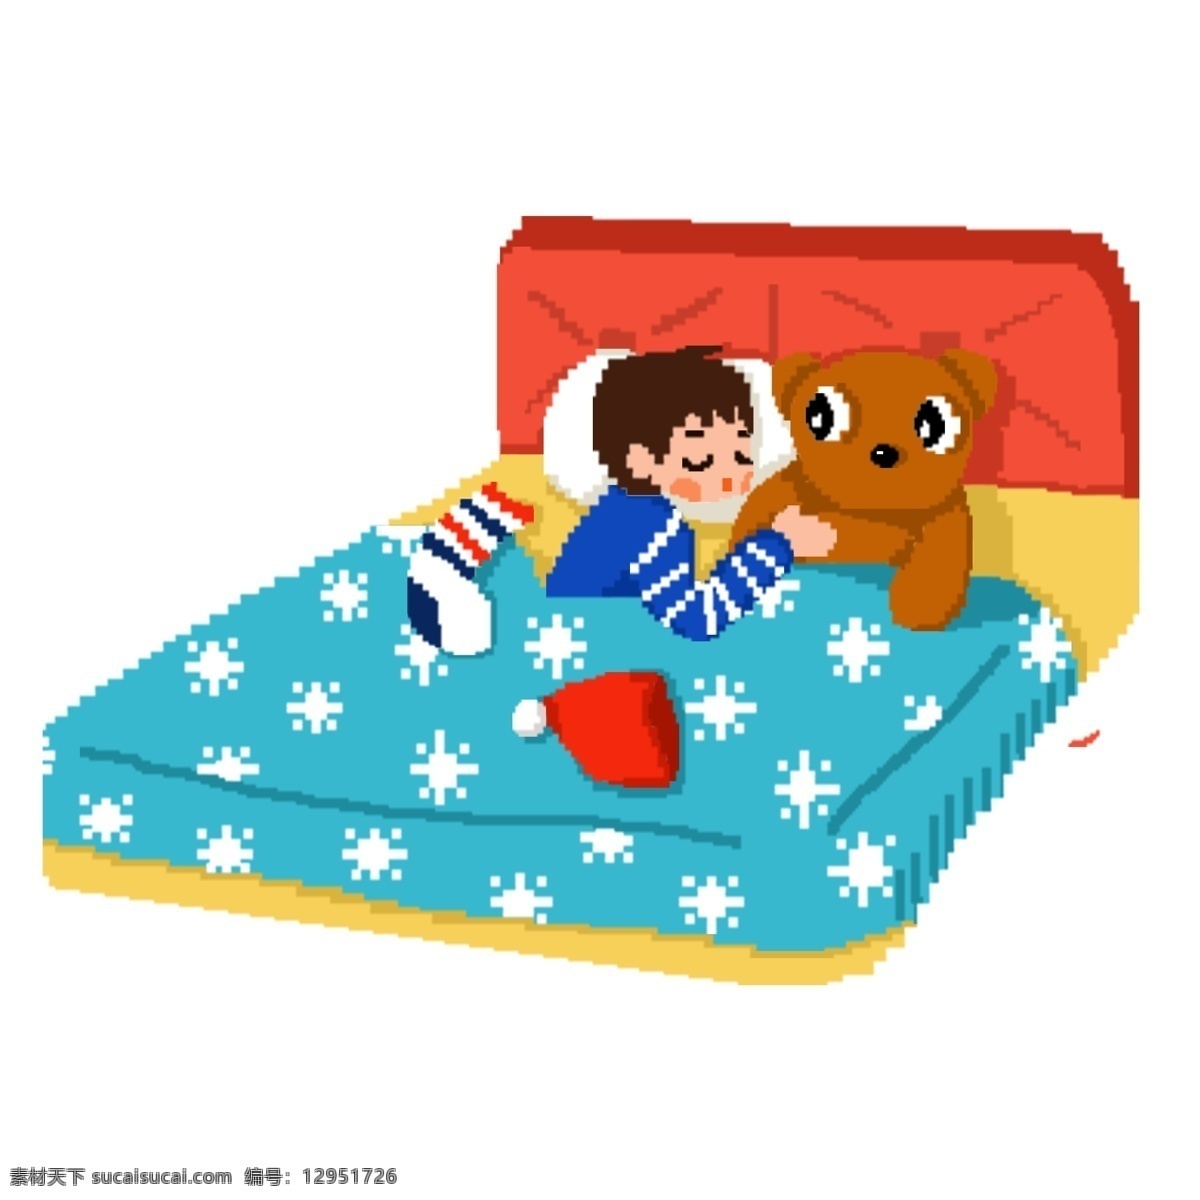 手绘 卡通 圣诞节 夜晚 搂 玩具 熊 睡觉 小 男孩 袜子 圣诞礼物 玩具熊 小男孩 圣诞帽 马赛克风